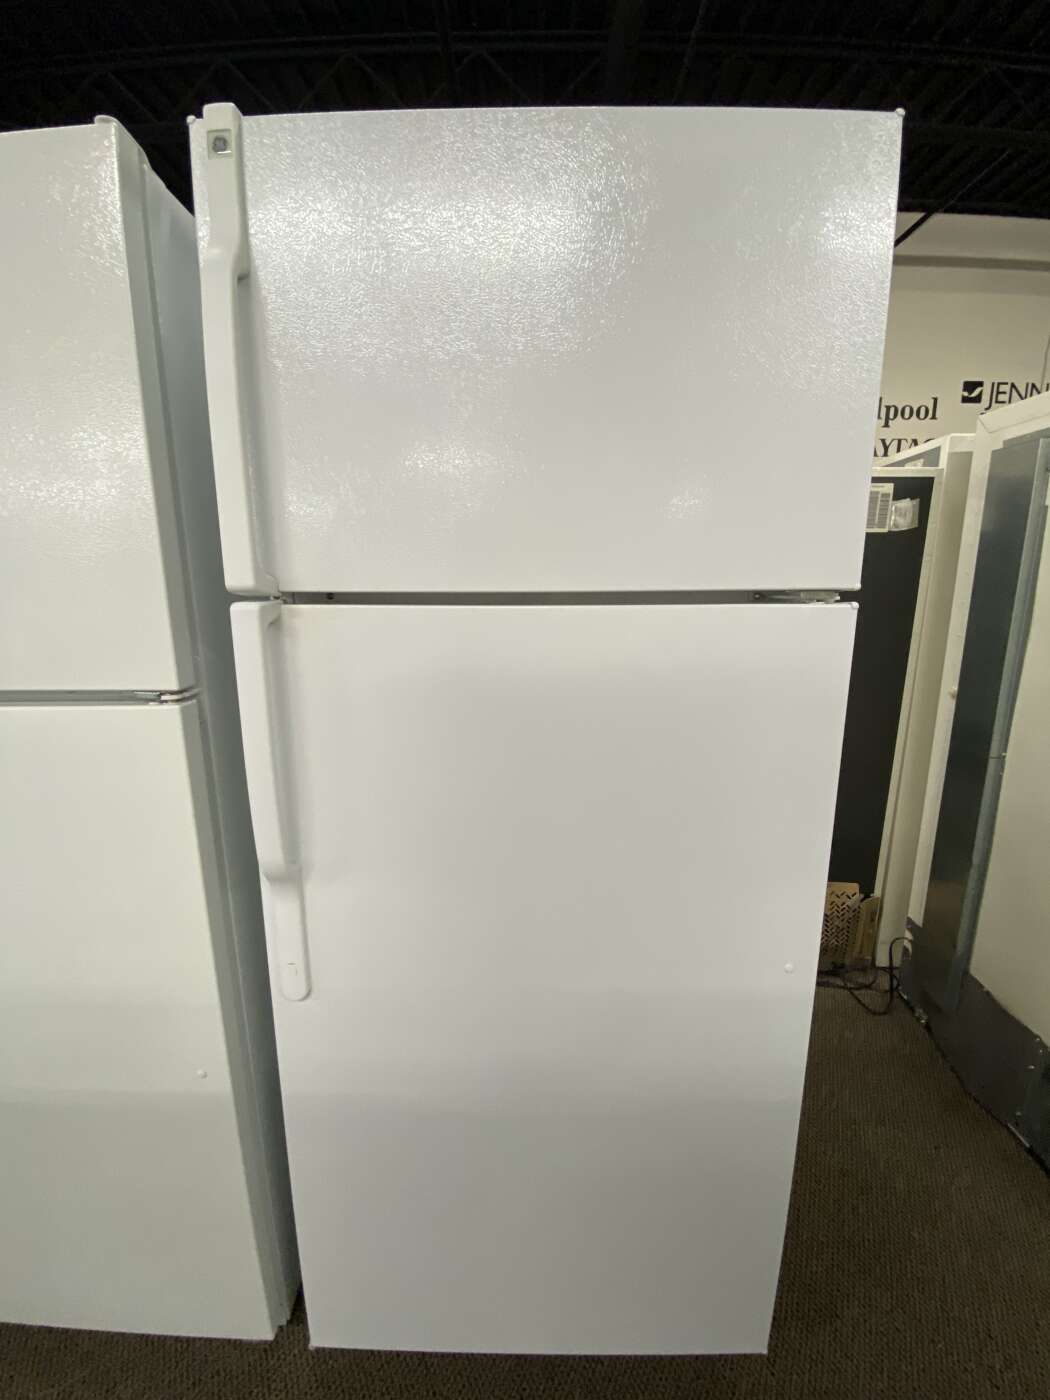 Reconditioned G/E 18 Cu. Ft. Top-Freezer Refrigerator – White